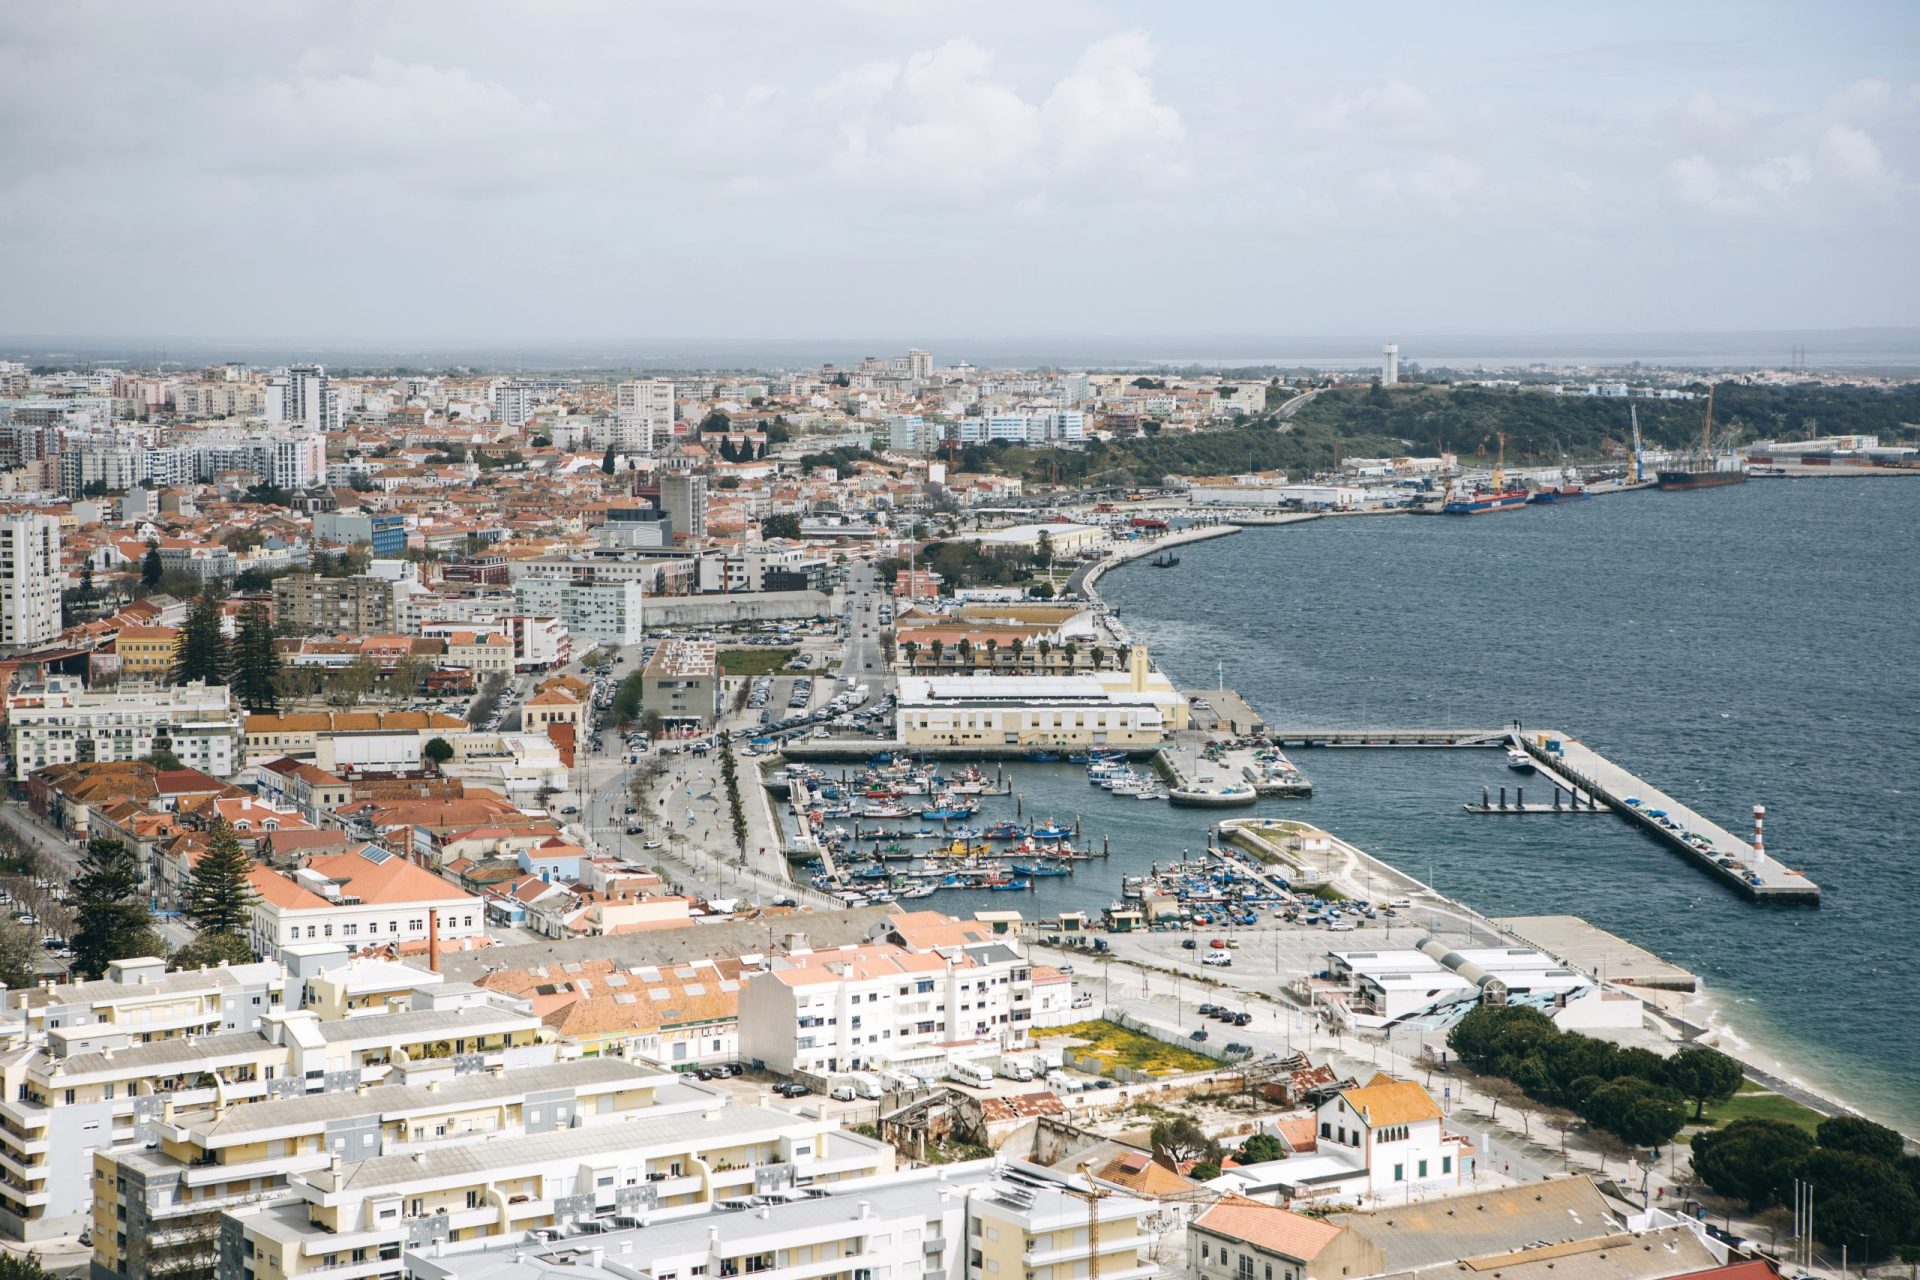 Tráfico internacional. Estivadores alvo de buscas no Porto de Setúbal